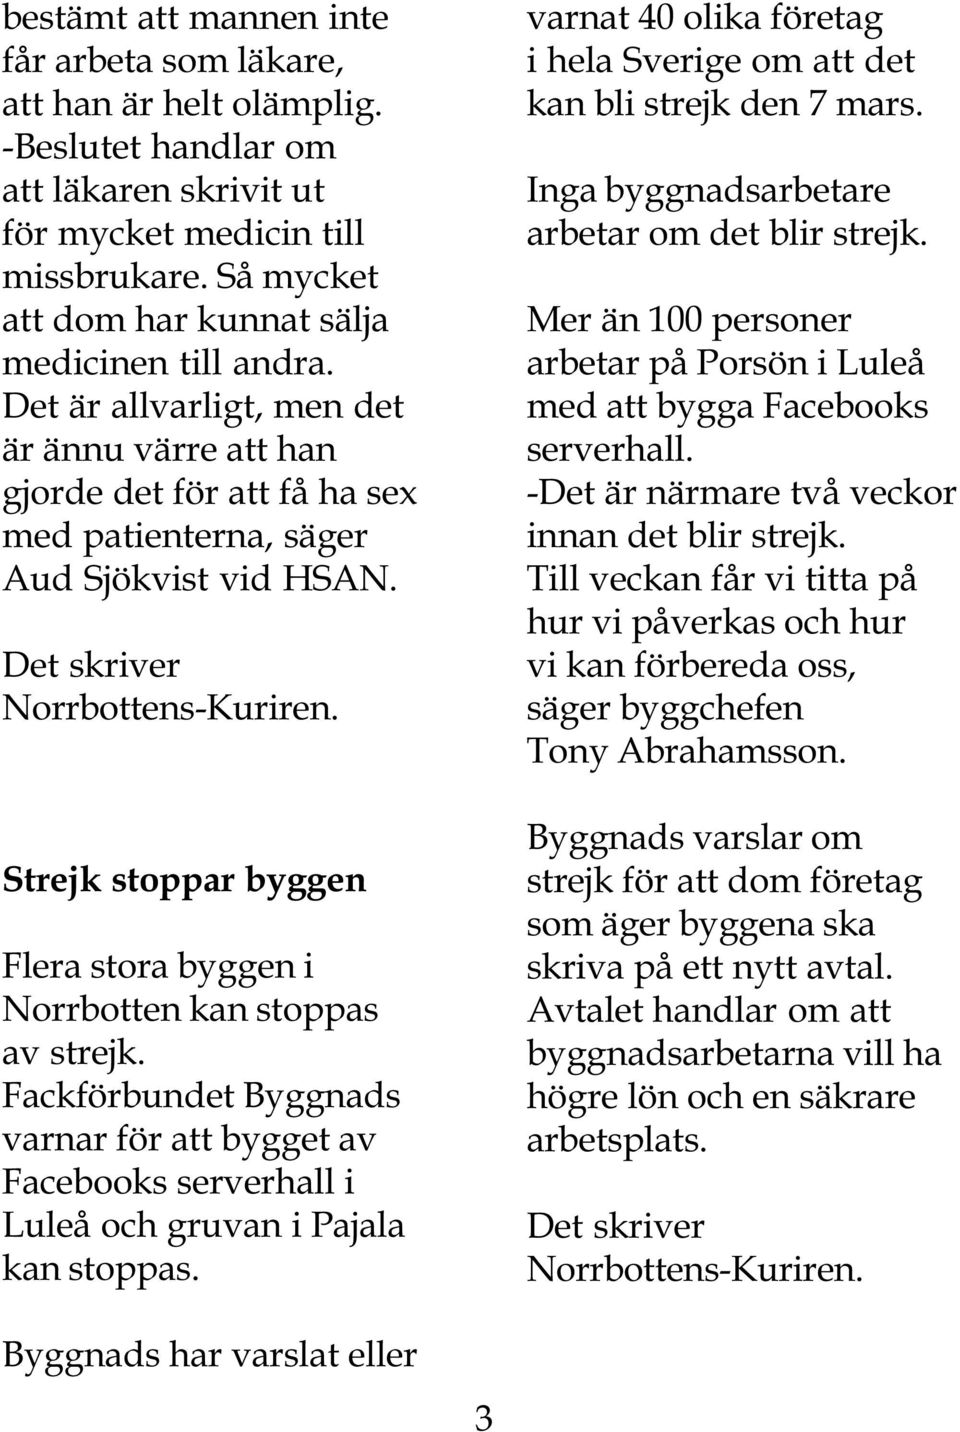 Det skriver Norrbottens-Kuriren. Strejk stoppar byggen Flera stora byggen i Norrbotten kan stoppas av strejk.